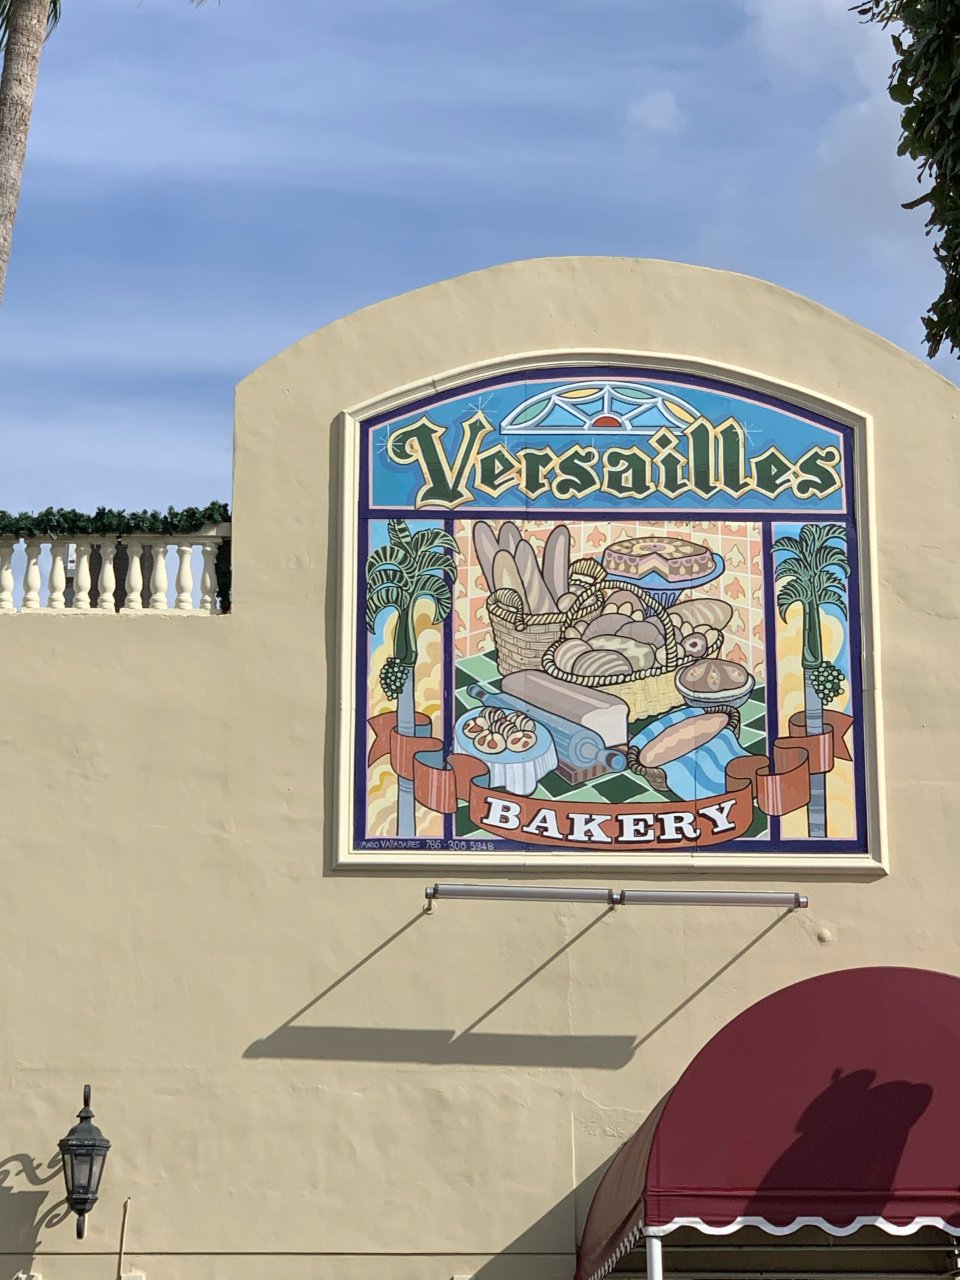 小哈瓦那的古巴菜- Versailles...